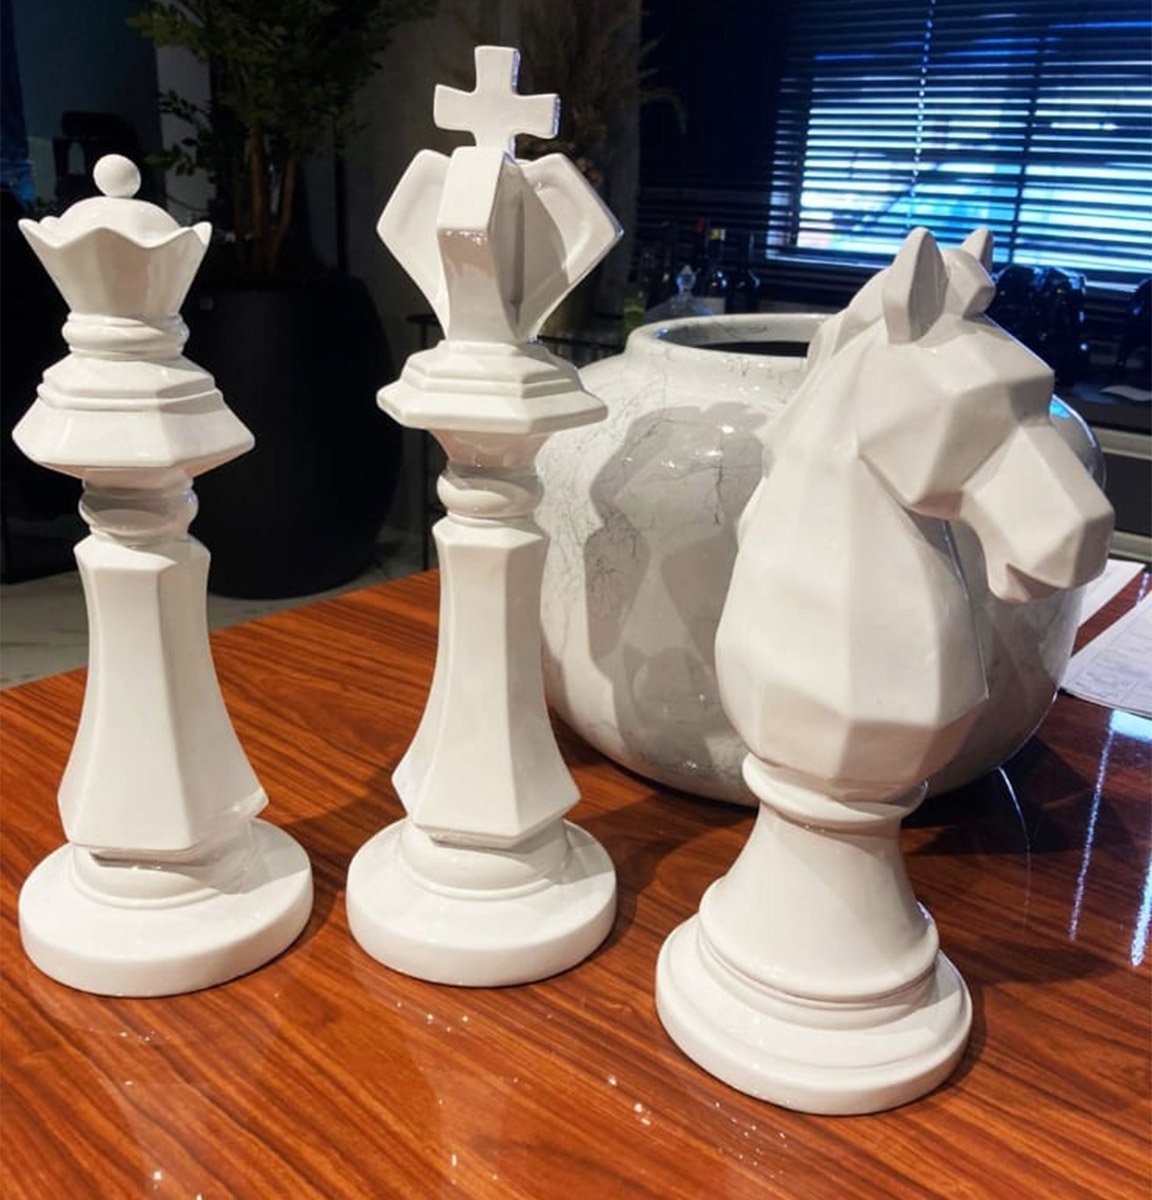 Tabuleiro e peças de mármore para xadrez com peças de b